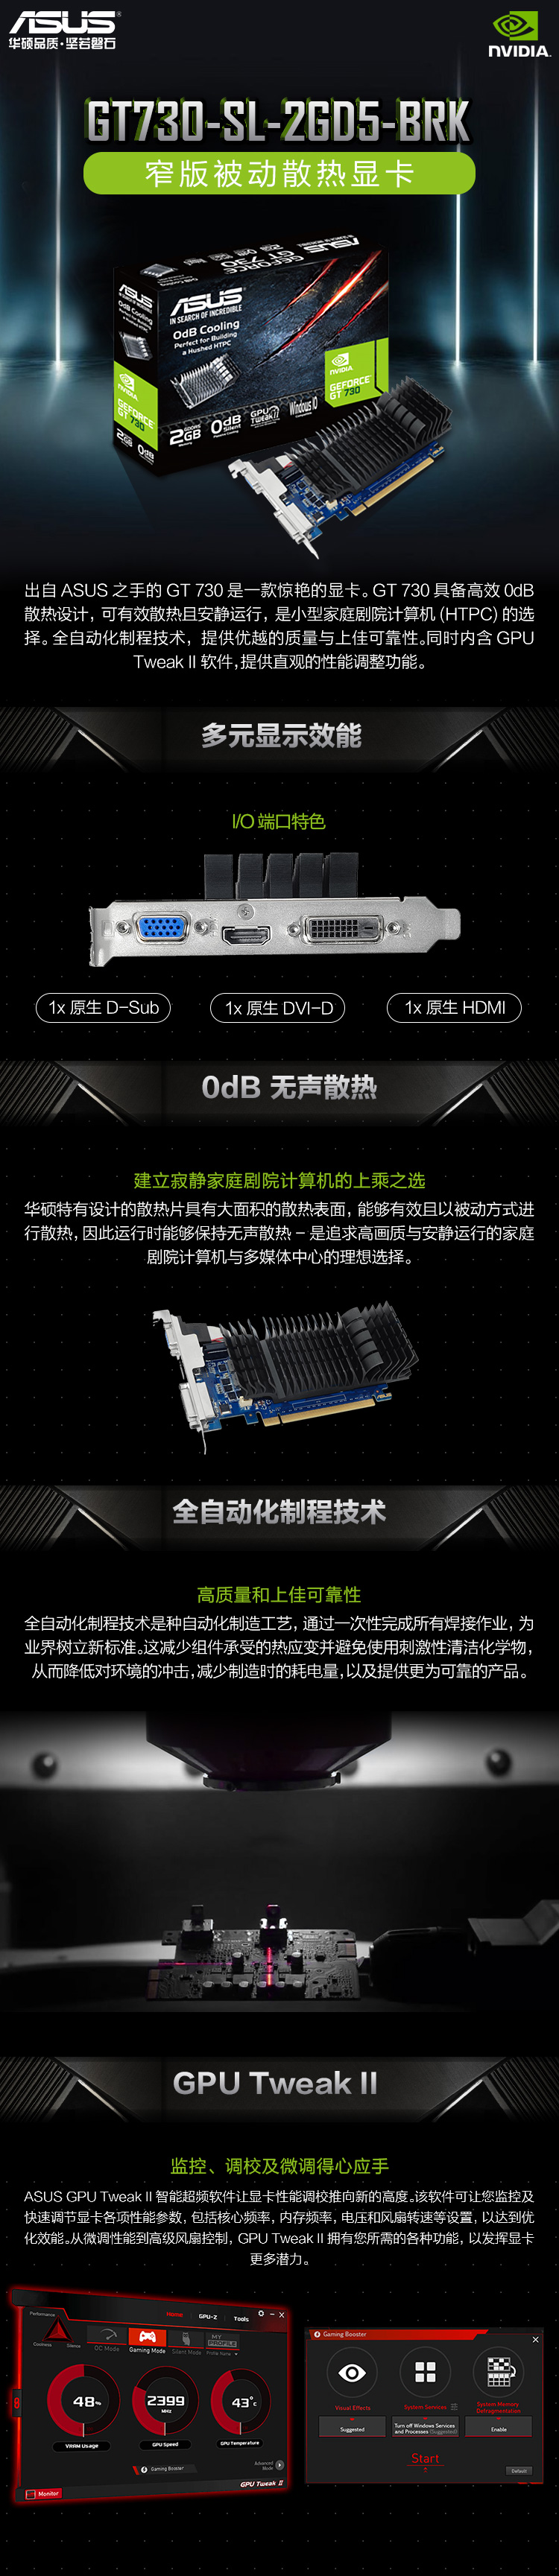 730 华硕显卡 GT730-SL-2GD5-BRK GDDR5 2GB 家庭娱乐办公显卡 (ASUS)